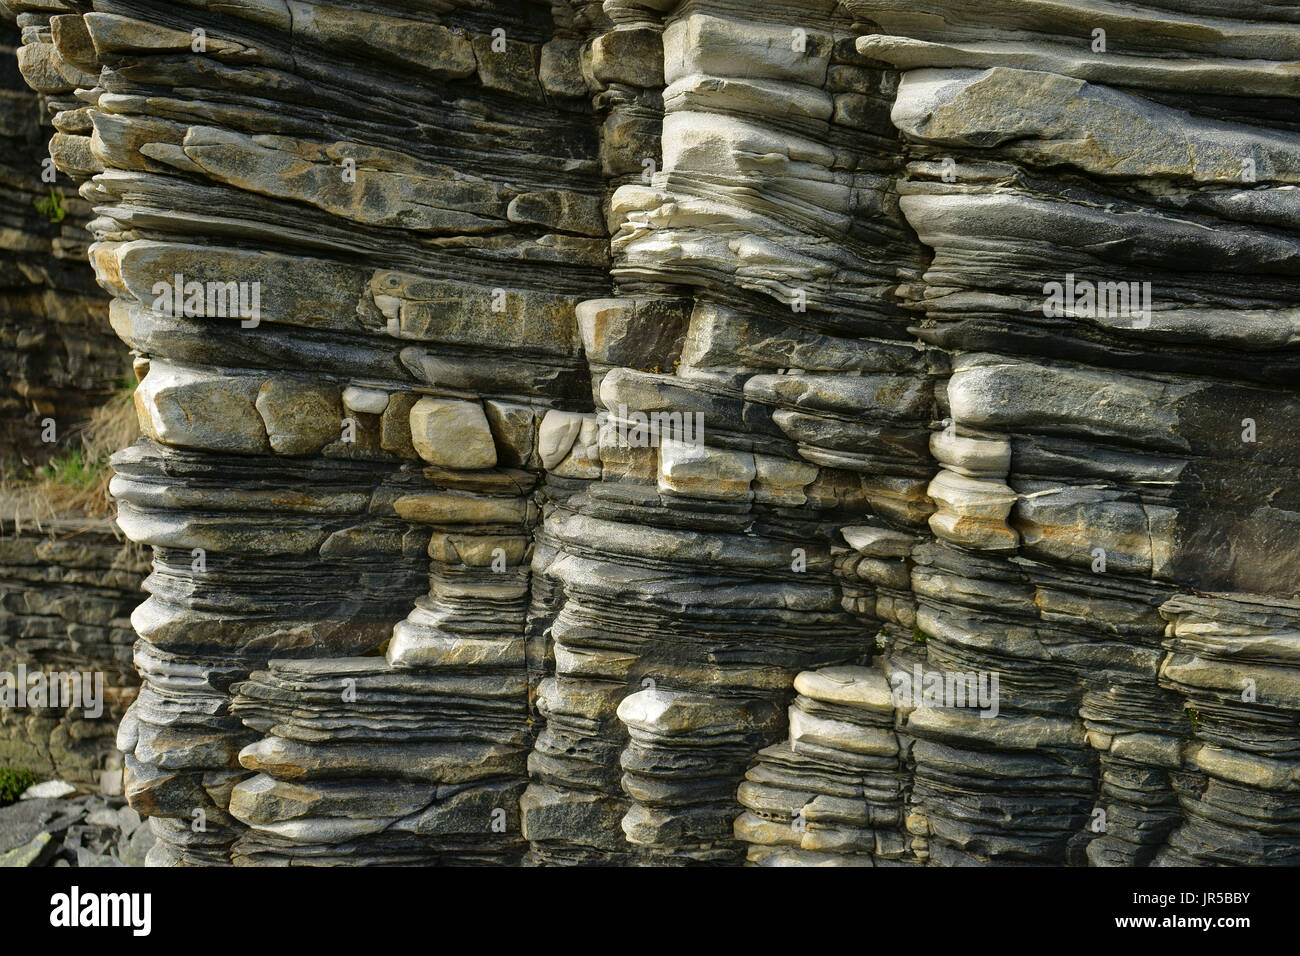 Les couches de roches dans la zone sud de falt Honningsvag North Cape, Finnmark, Norvège Banque D'Images